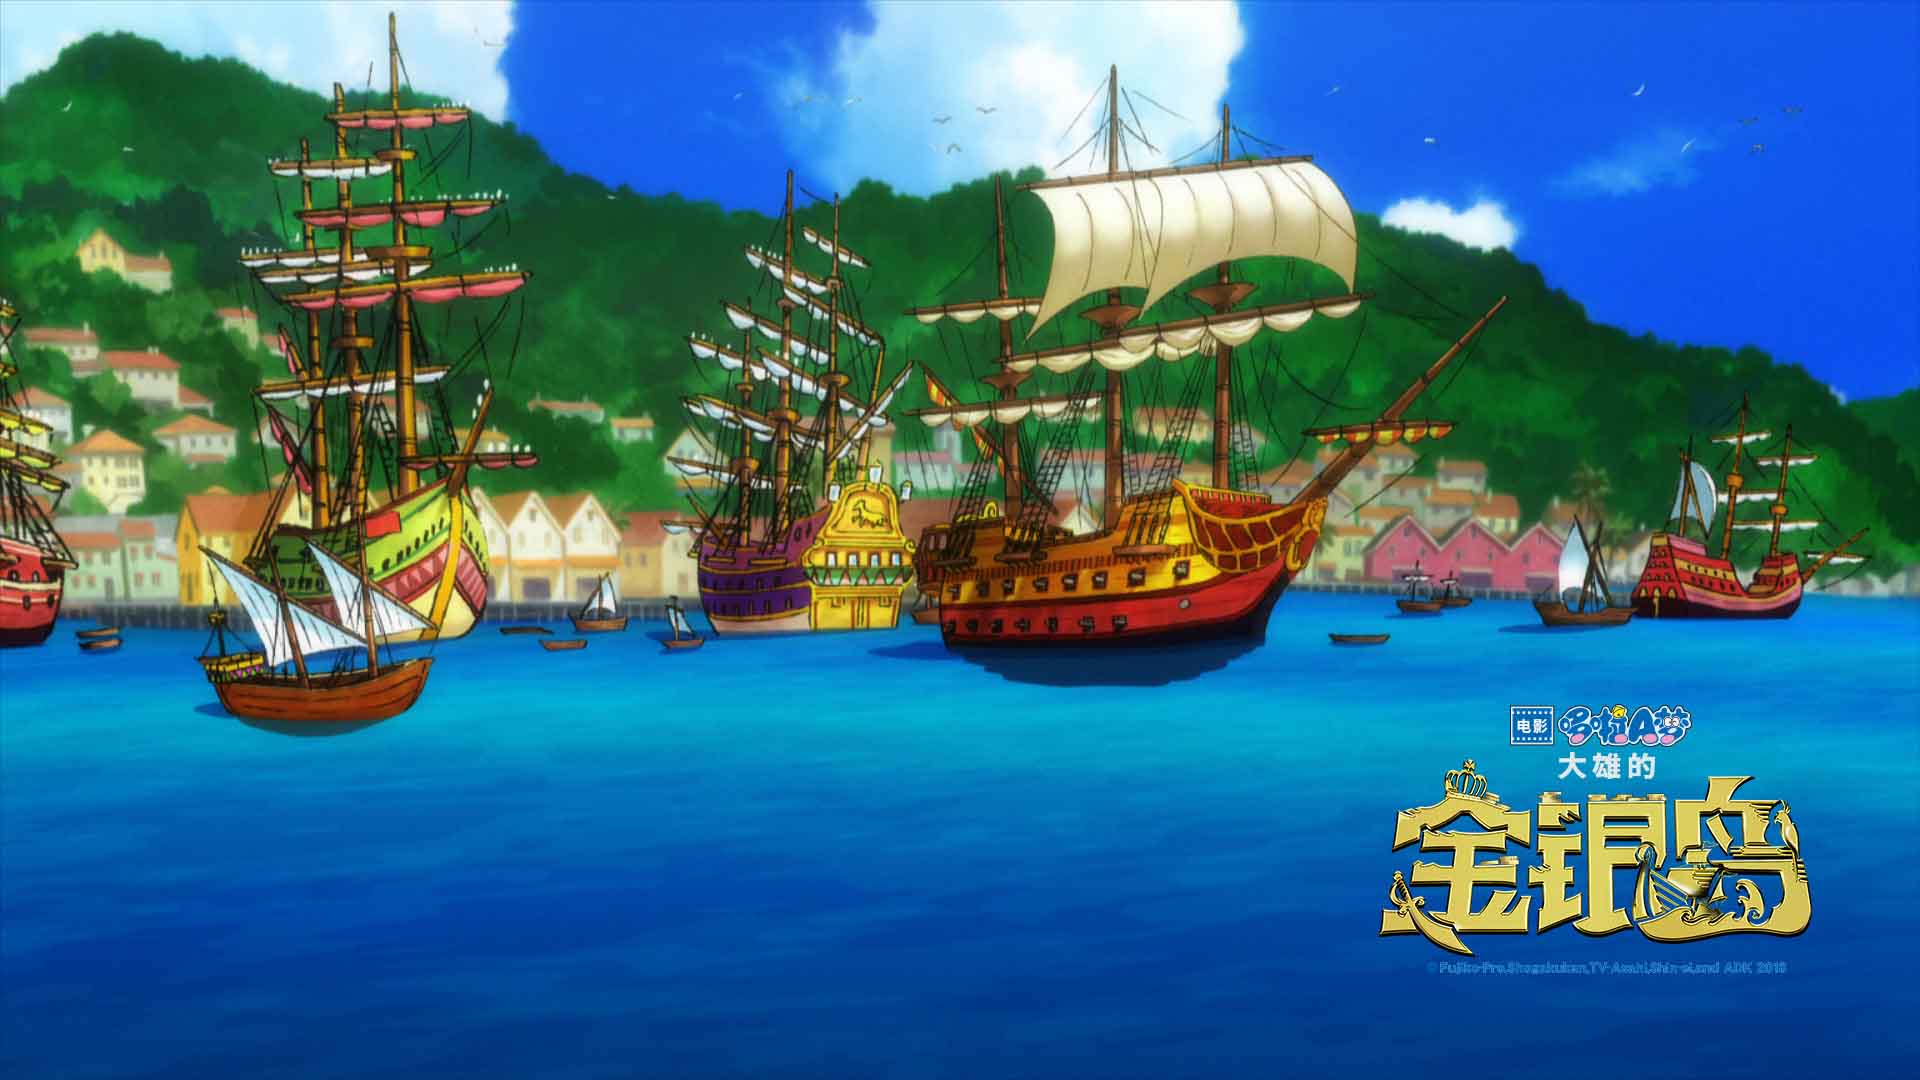 据悉,《哆啦a梦:大雄的金银岛》已于今天6月1日在全国上映.